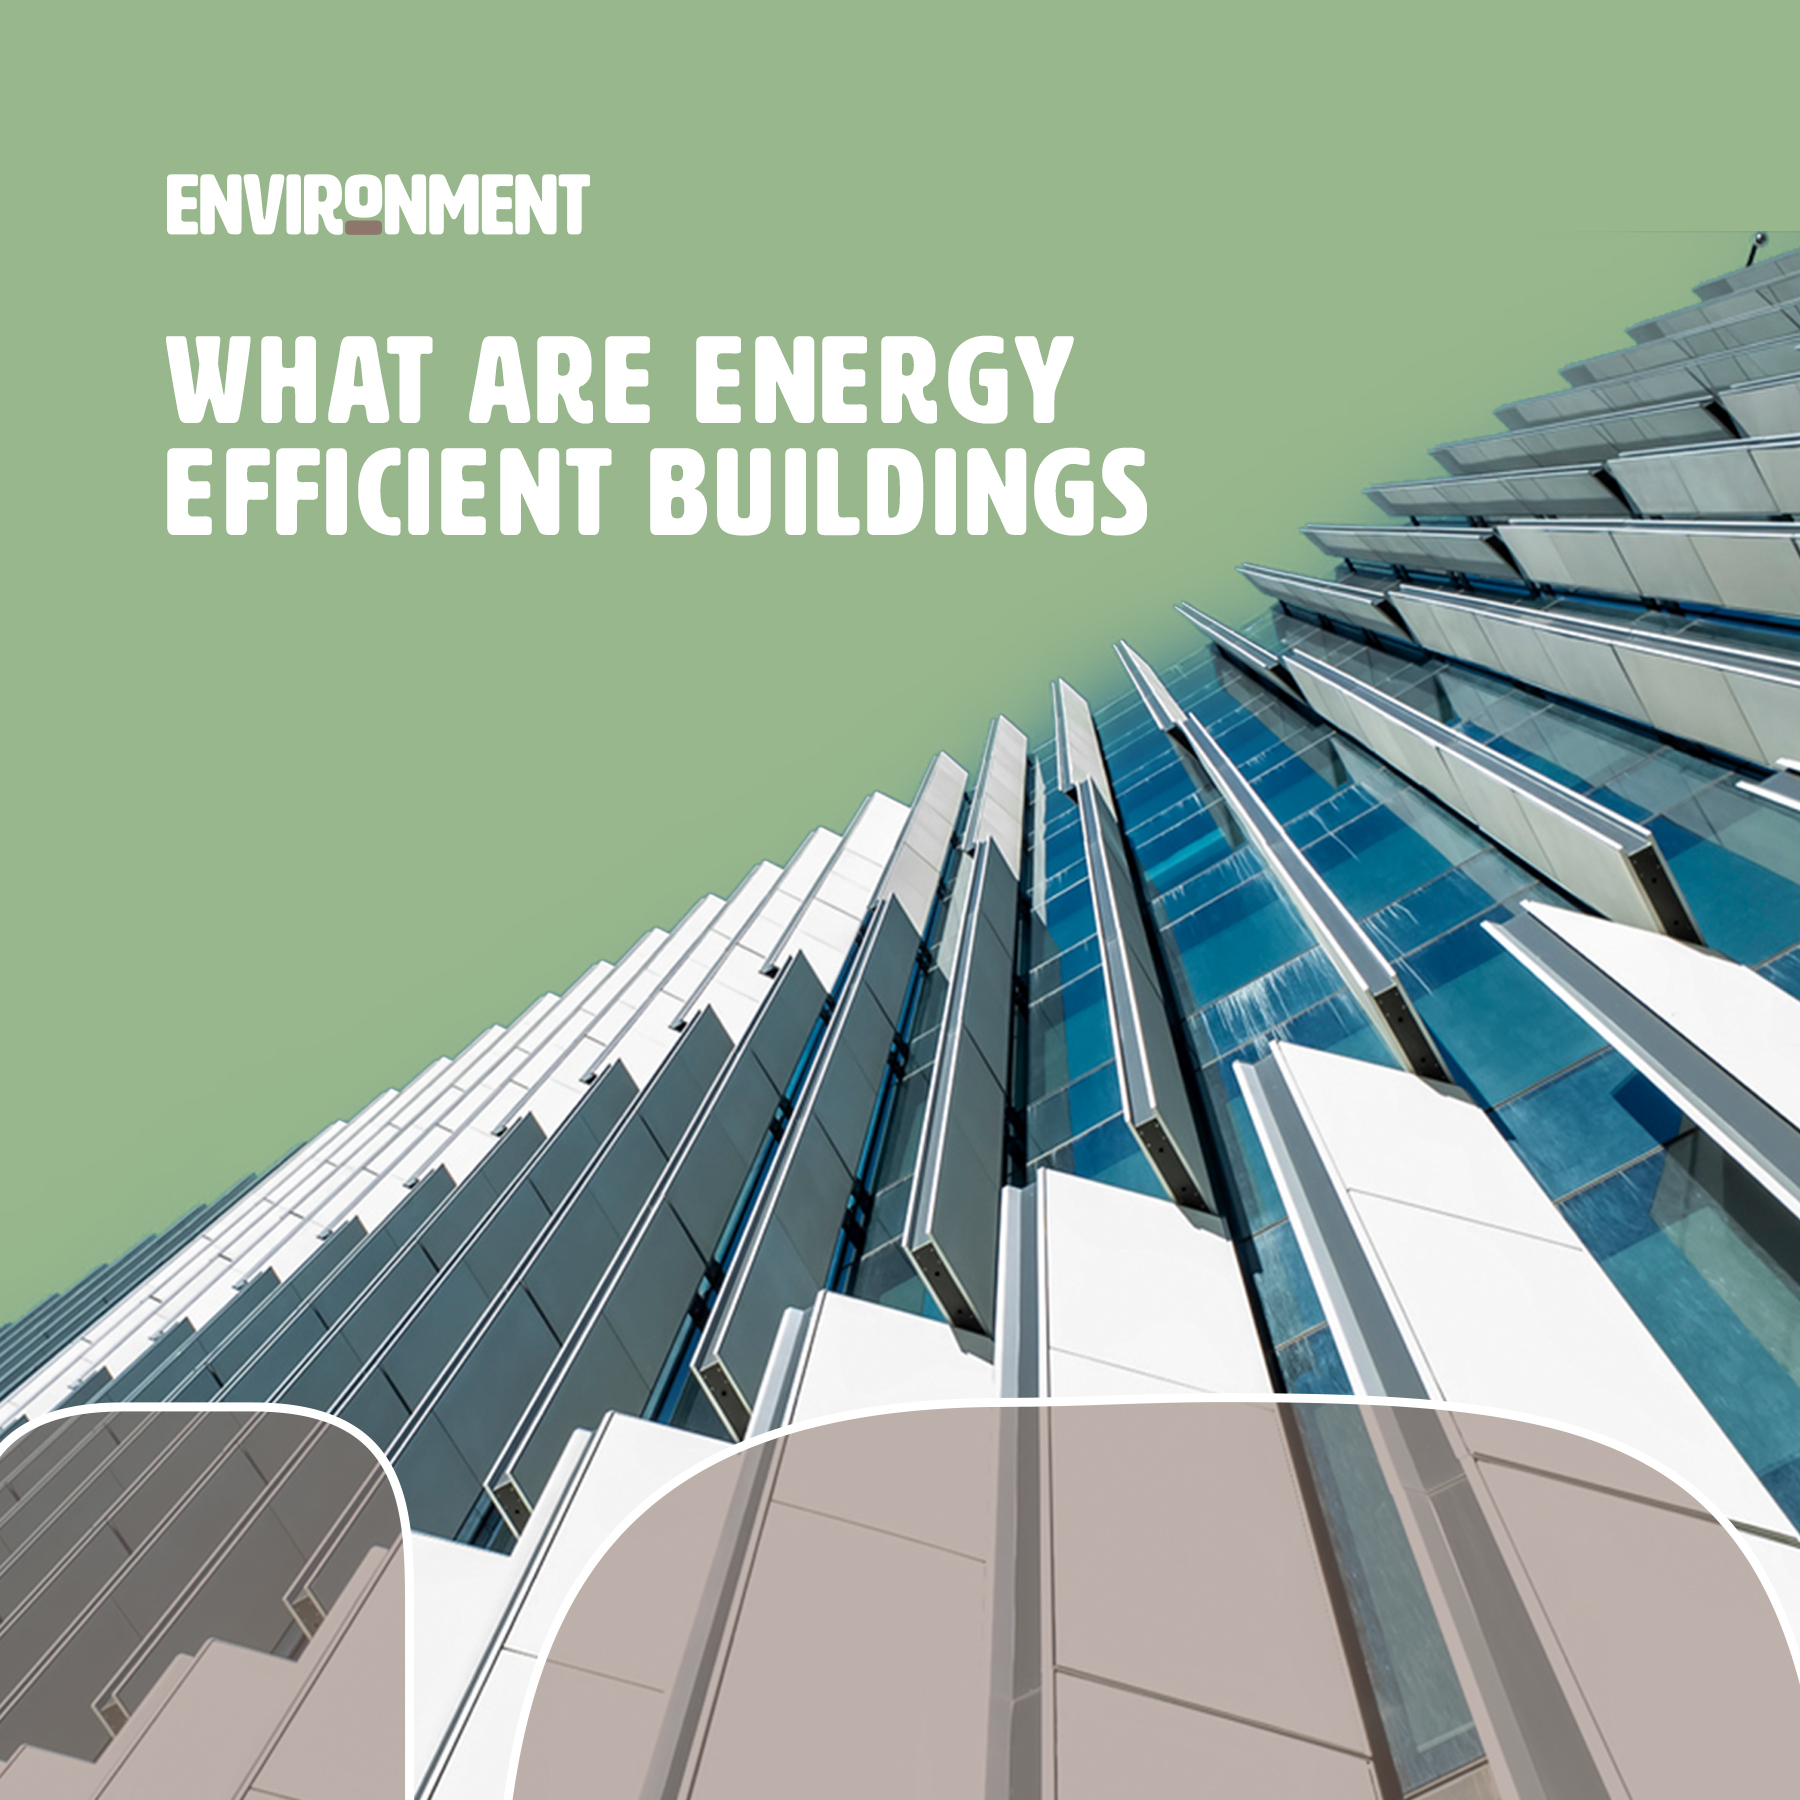 energy efficiency building envelope